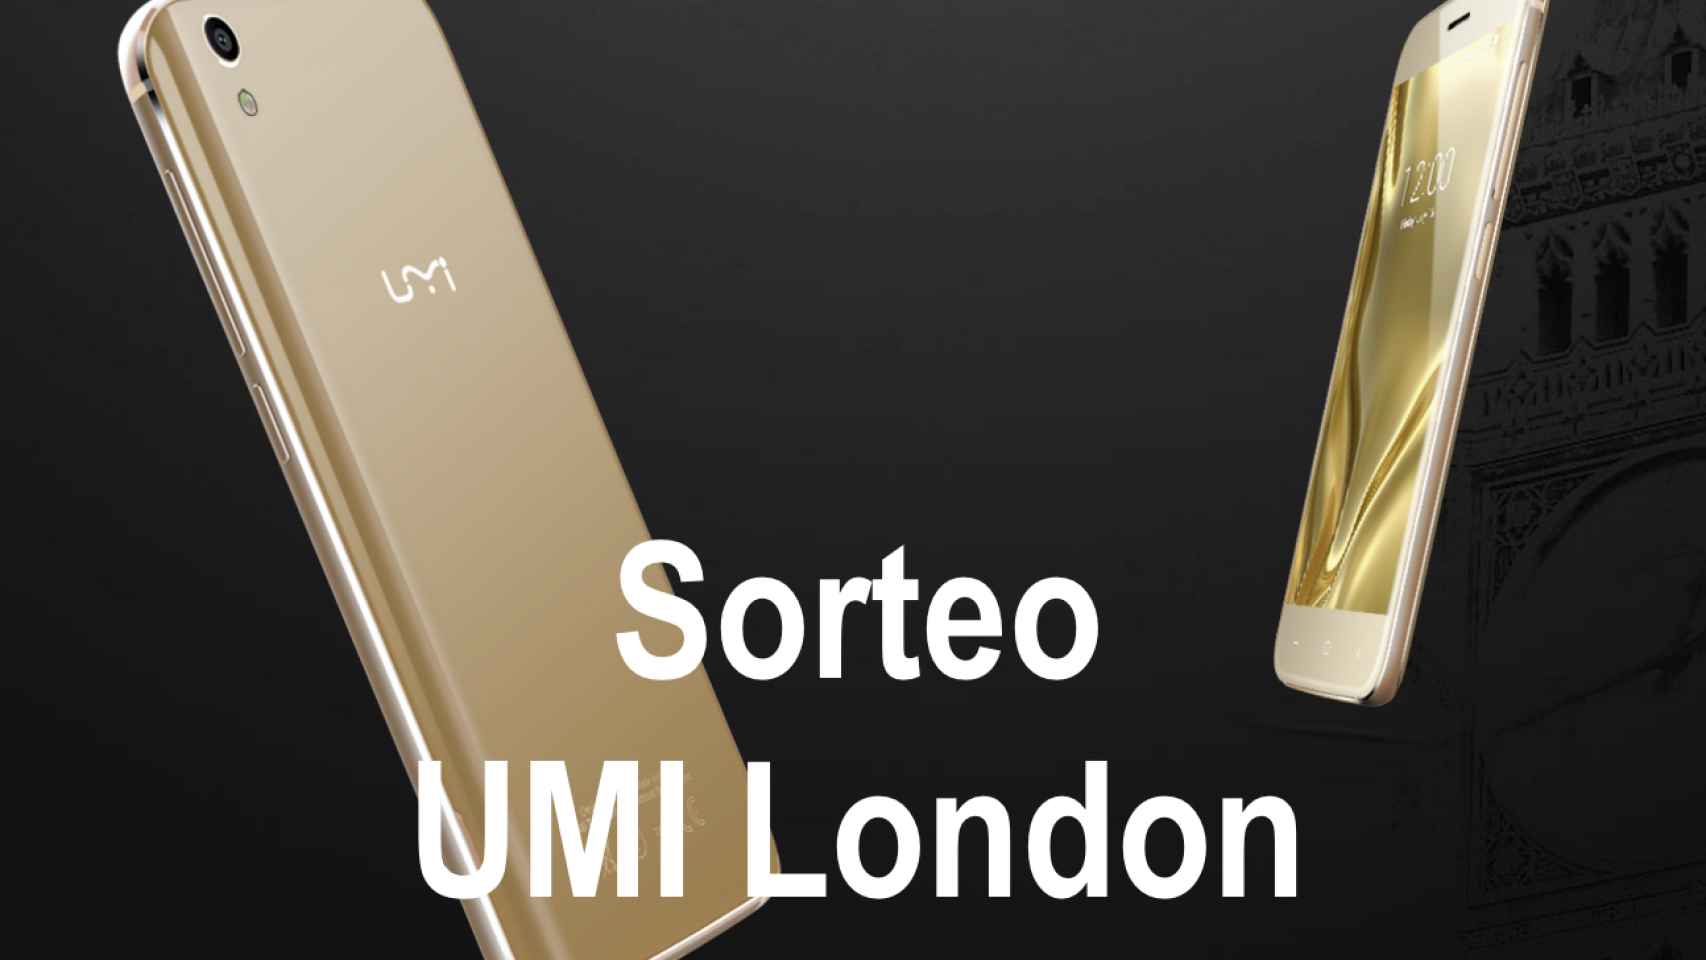 Sorteo: participa y gana un UMI London